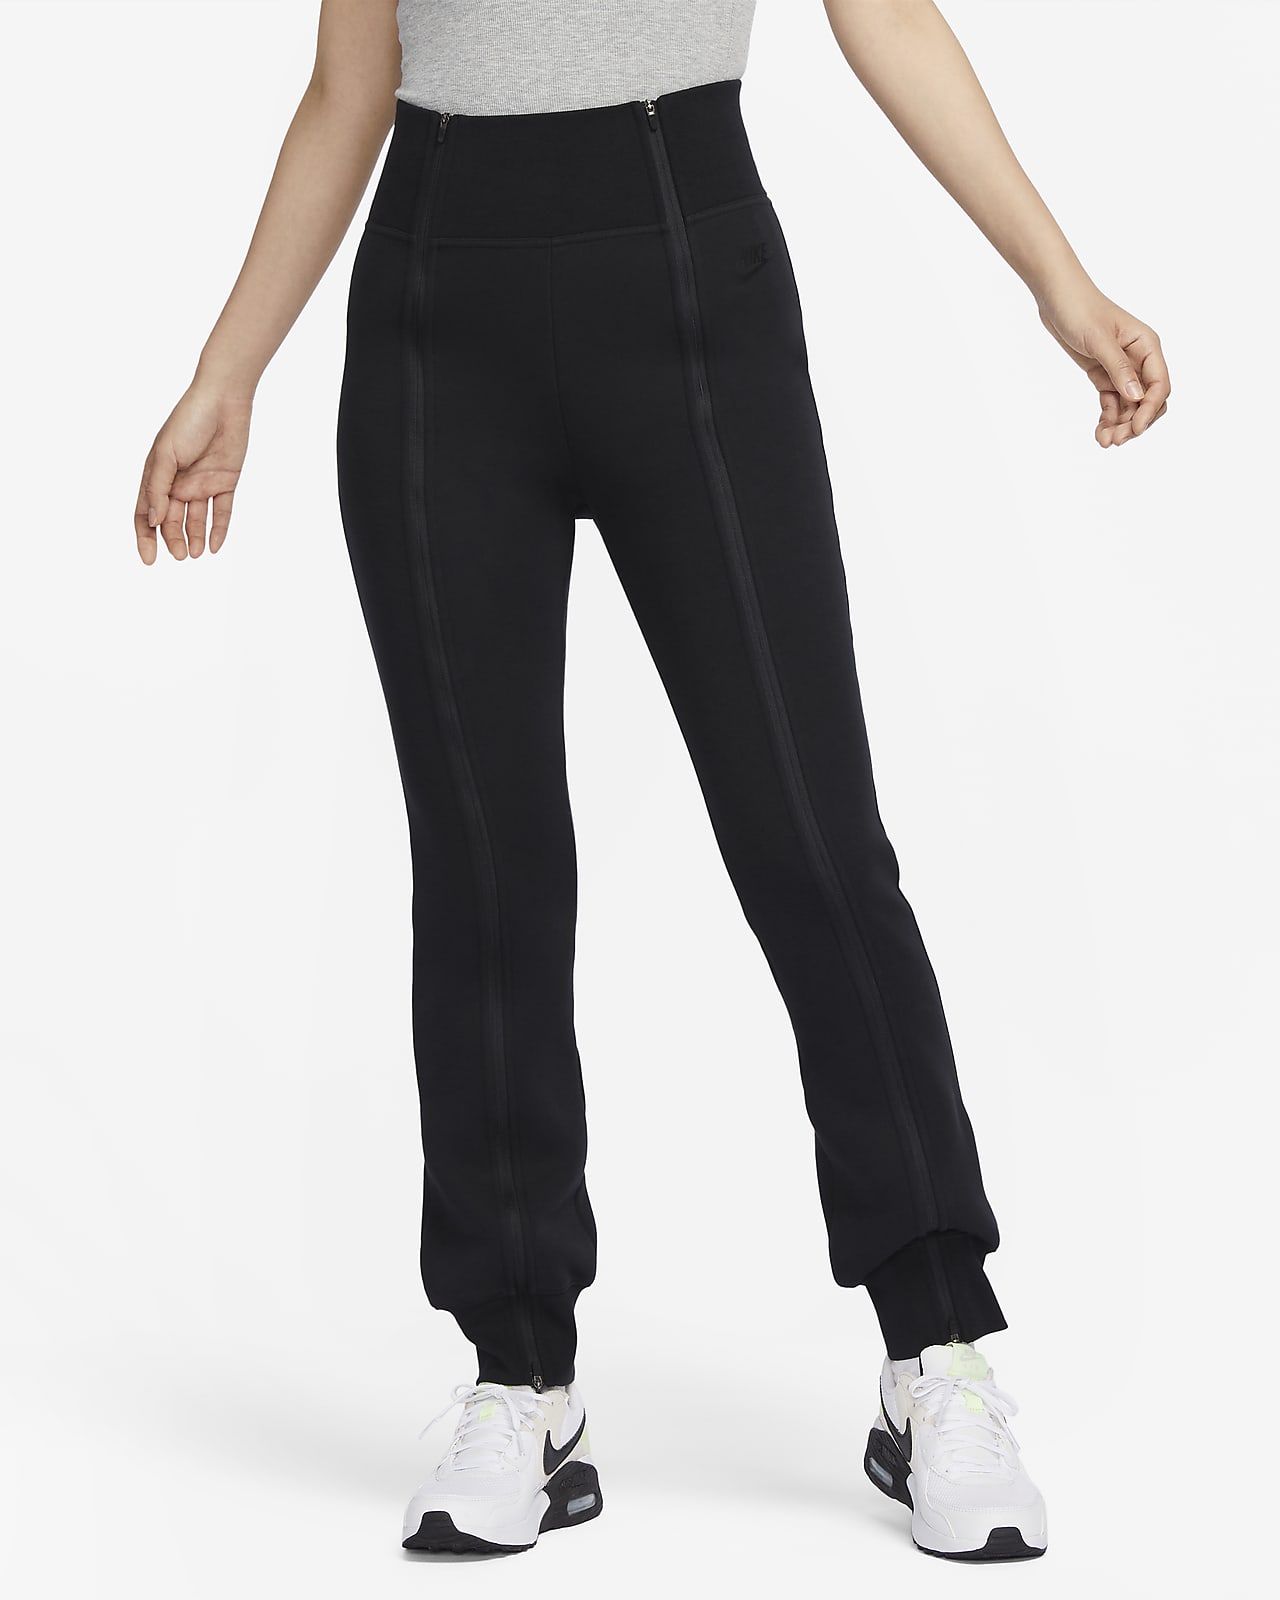 Nike Sportswear Tech Fleece Women's High-Waisted Slim Zip Pants. Nike JP